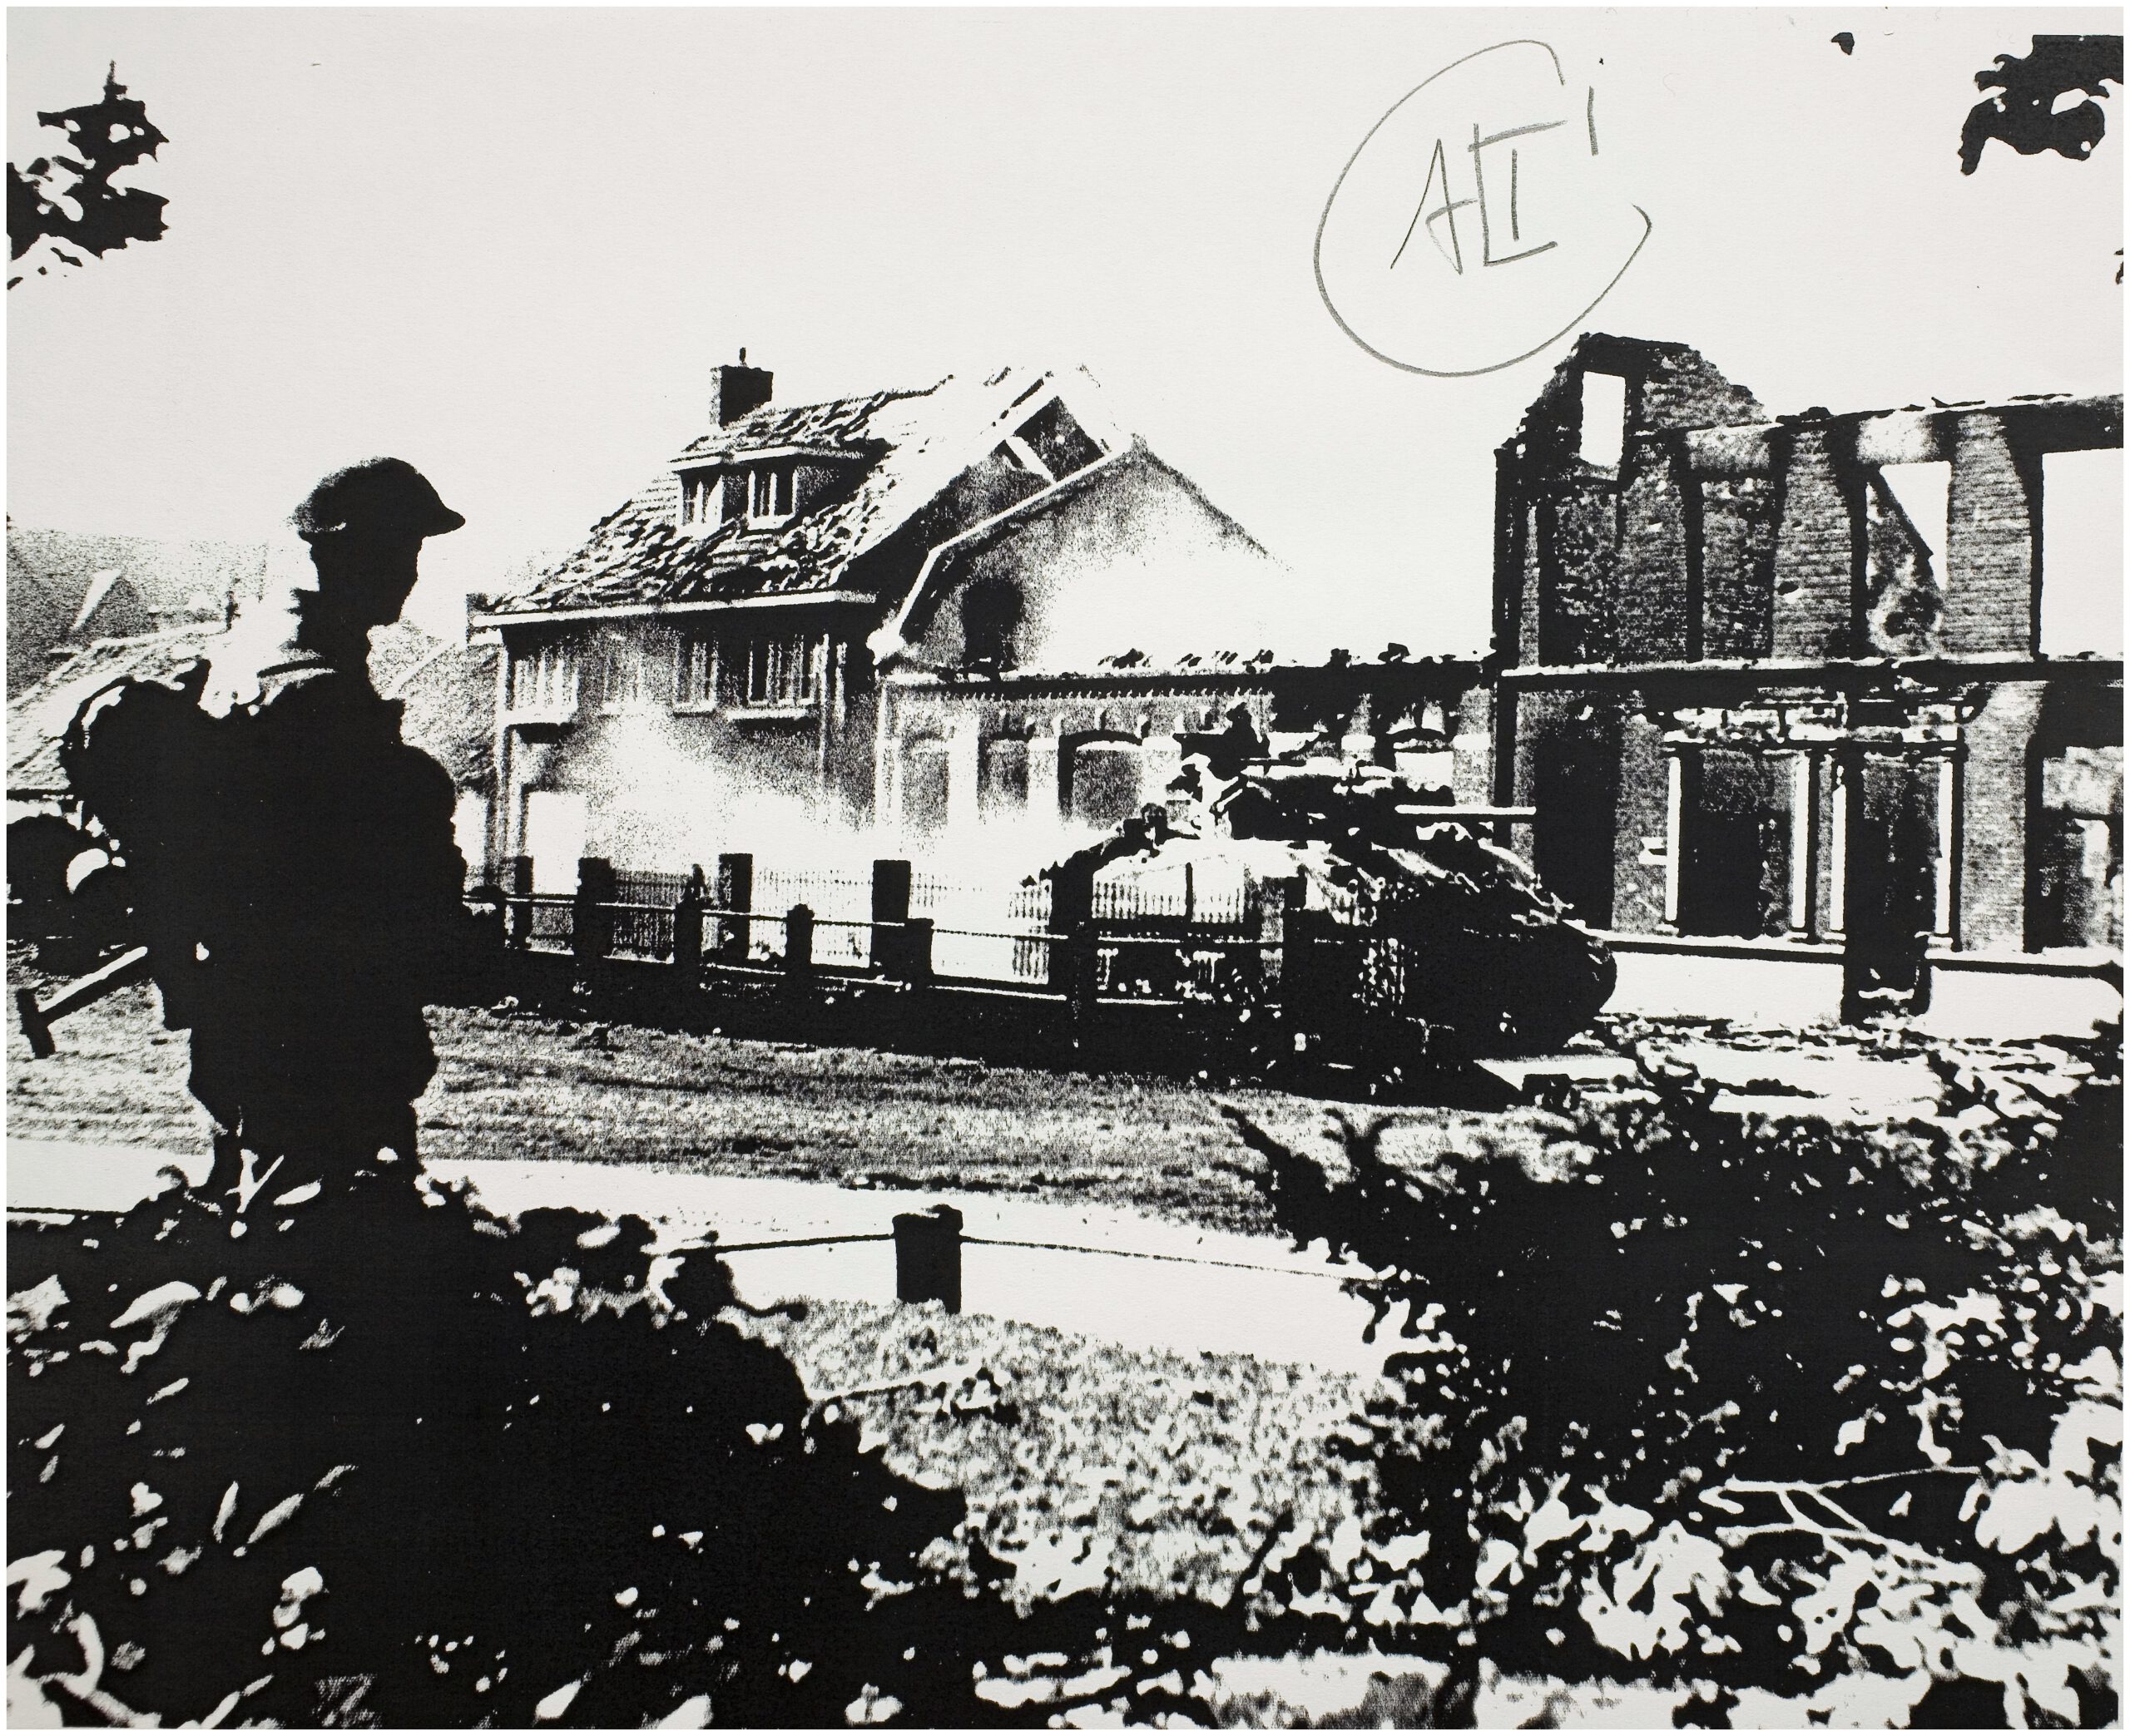 Een Shermantank voor de uitgebrande huizen van de familie van Hoek en de familie Eijsbouts. September 1944. Beeldcollectie Regionaal Historisch Centrum Eindhoven